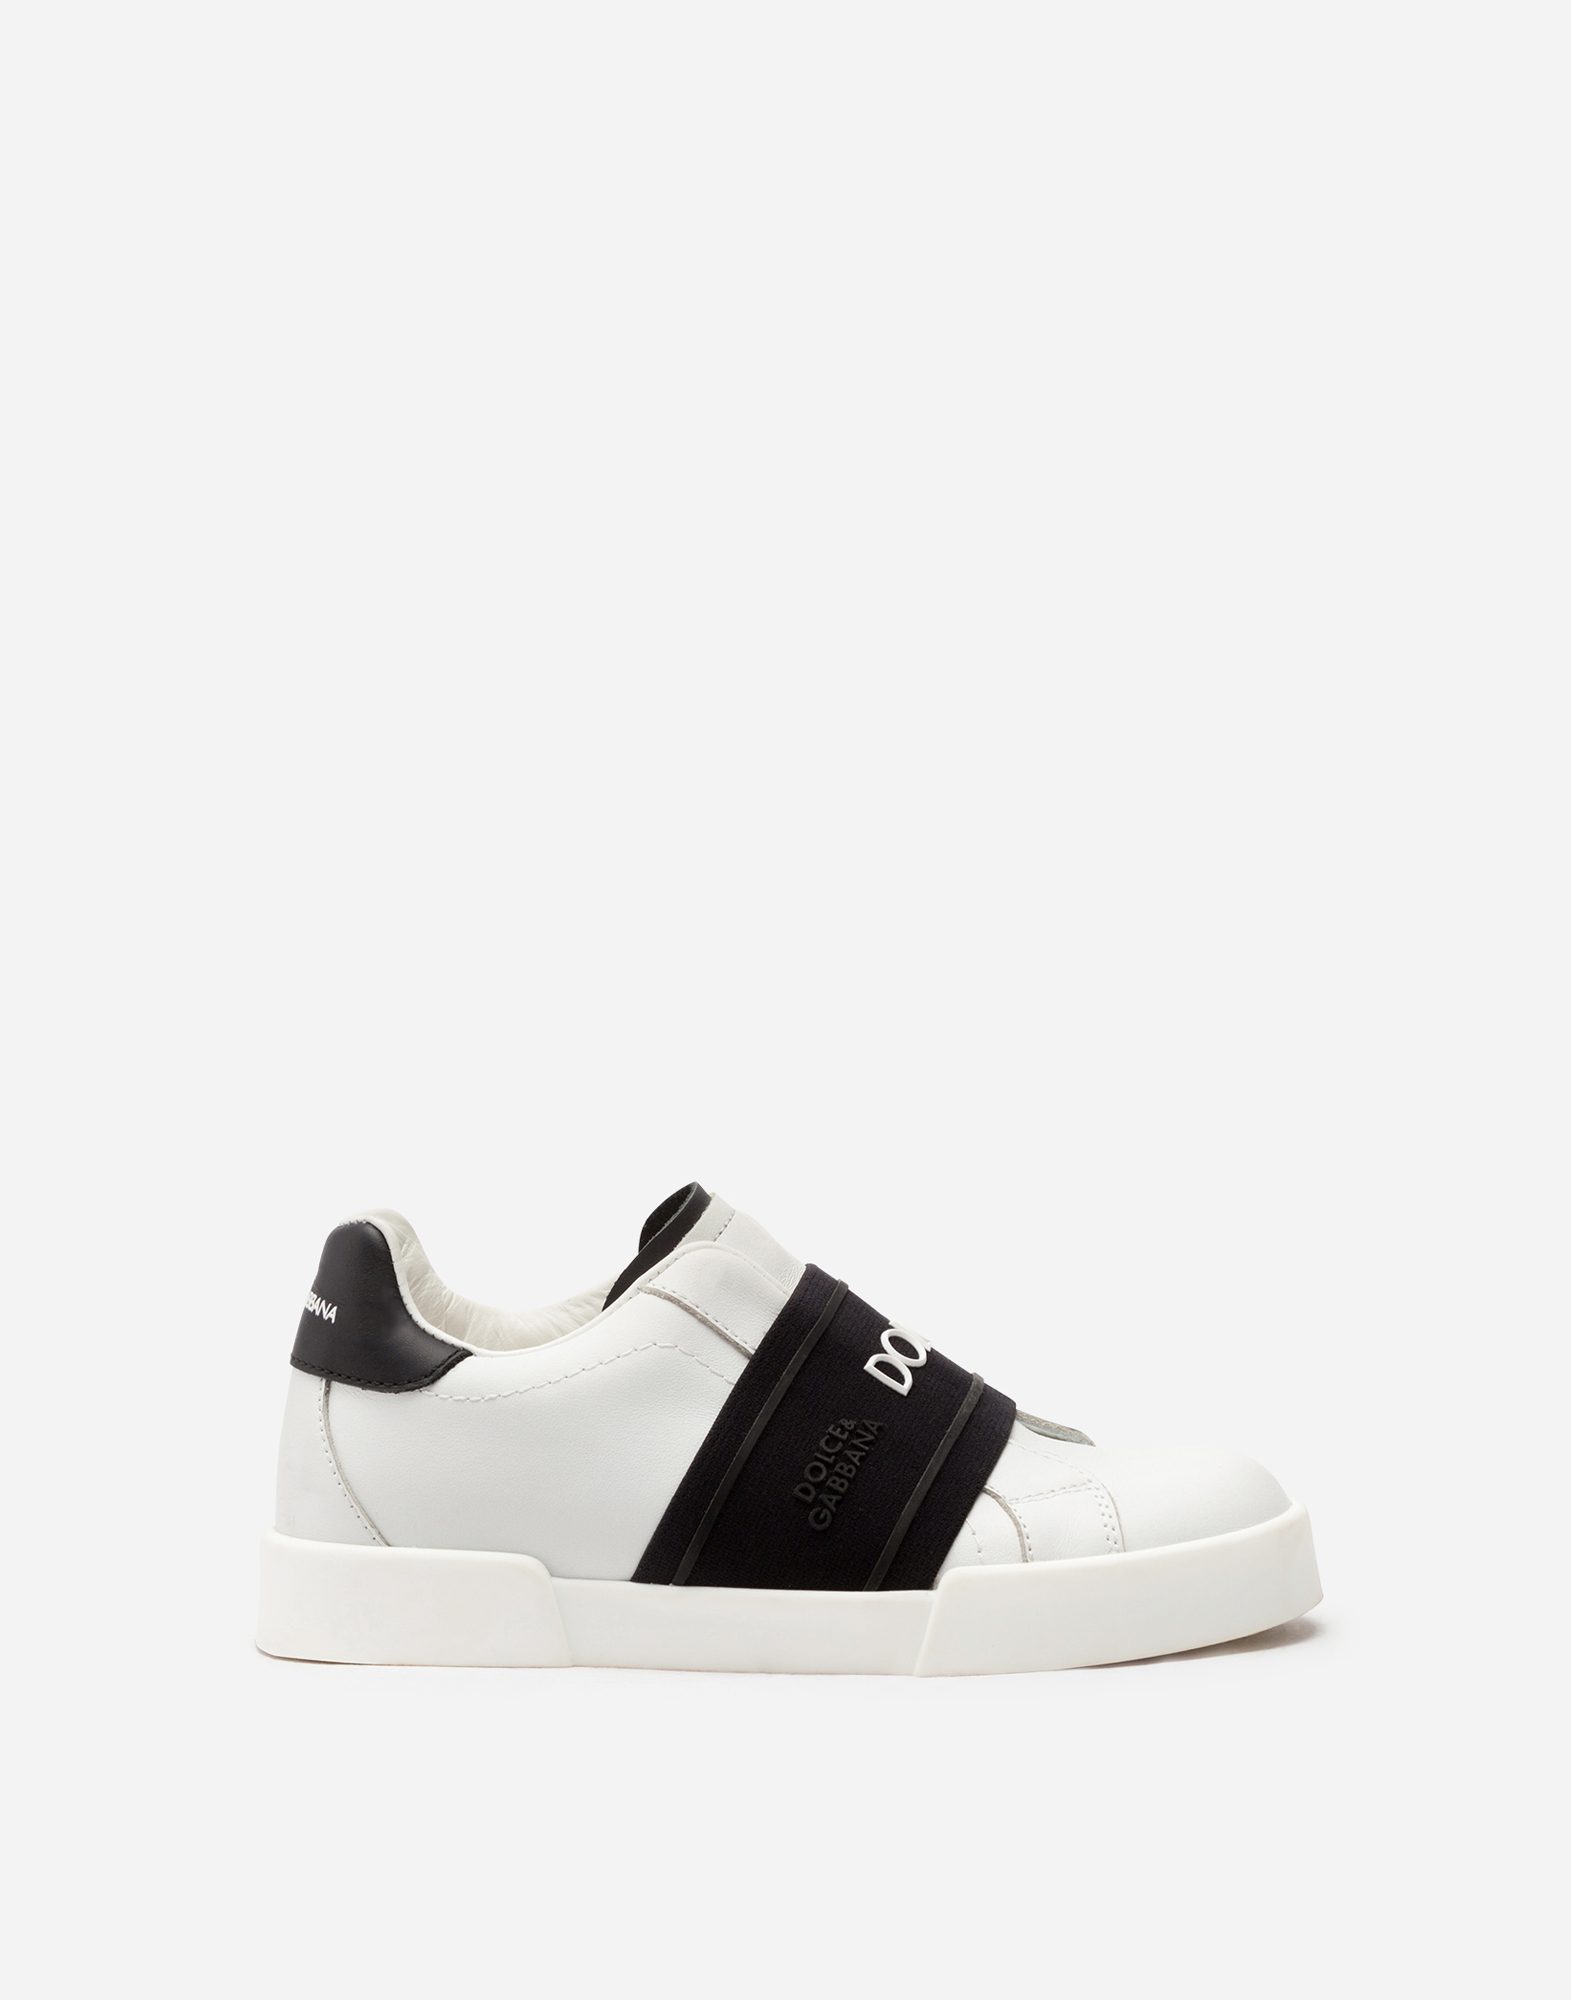 Calfskin Portofino slip-on sneakers in White/Black